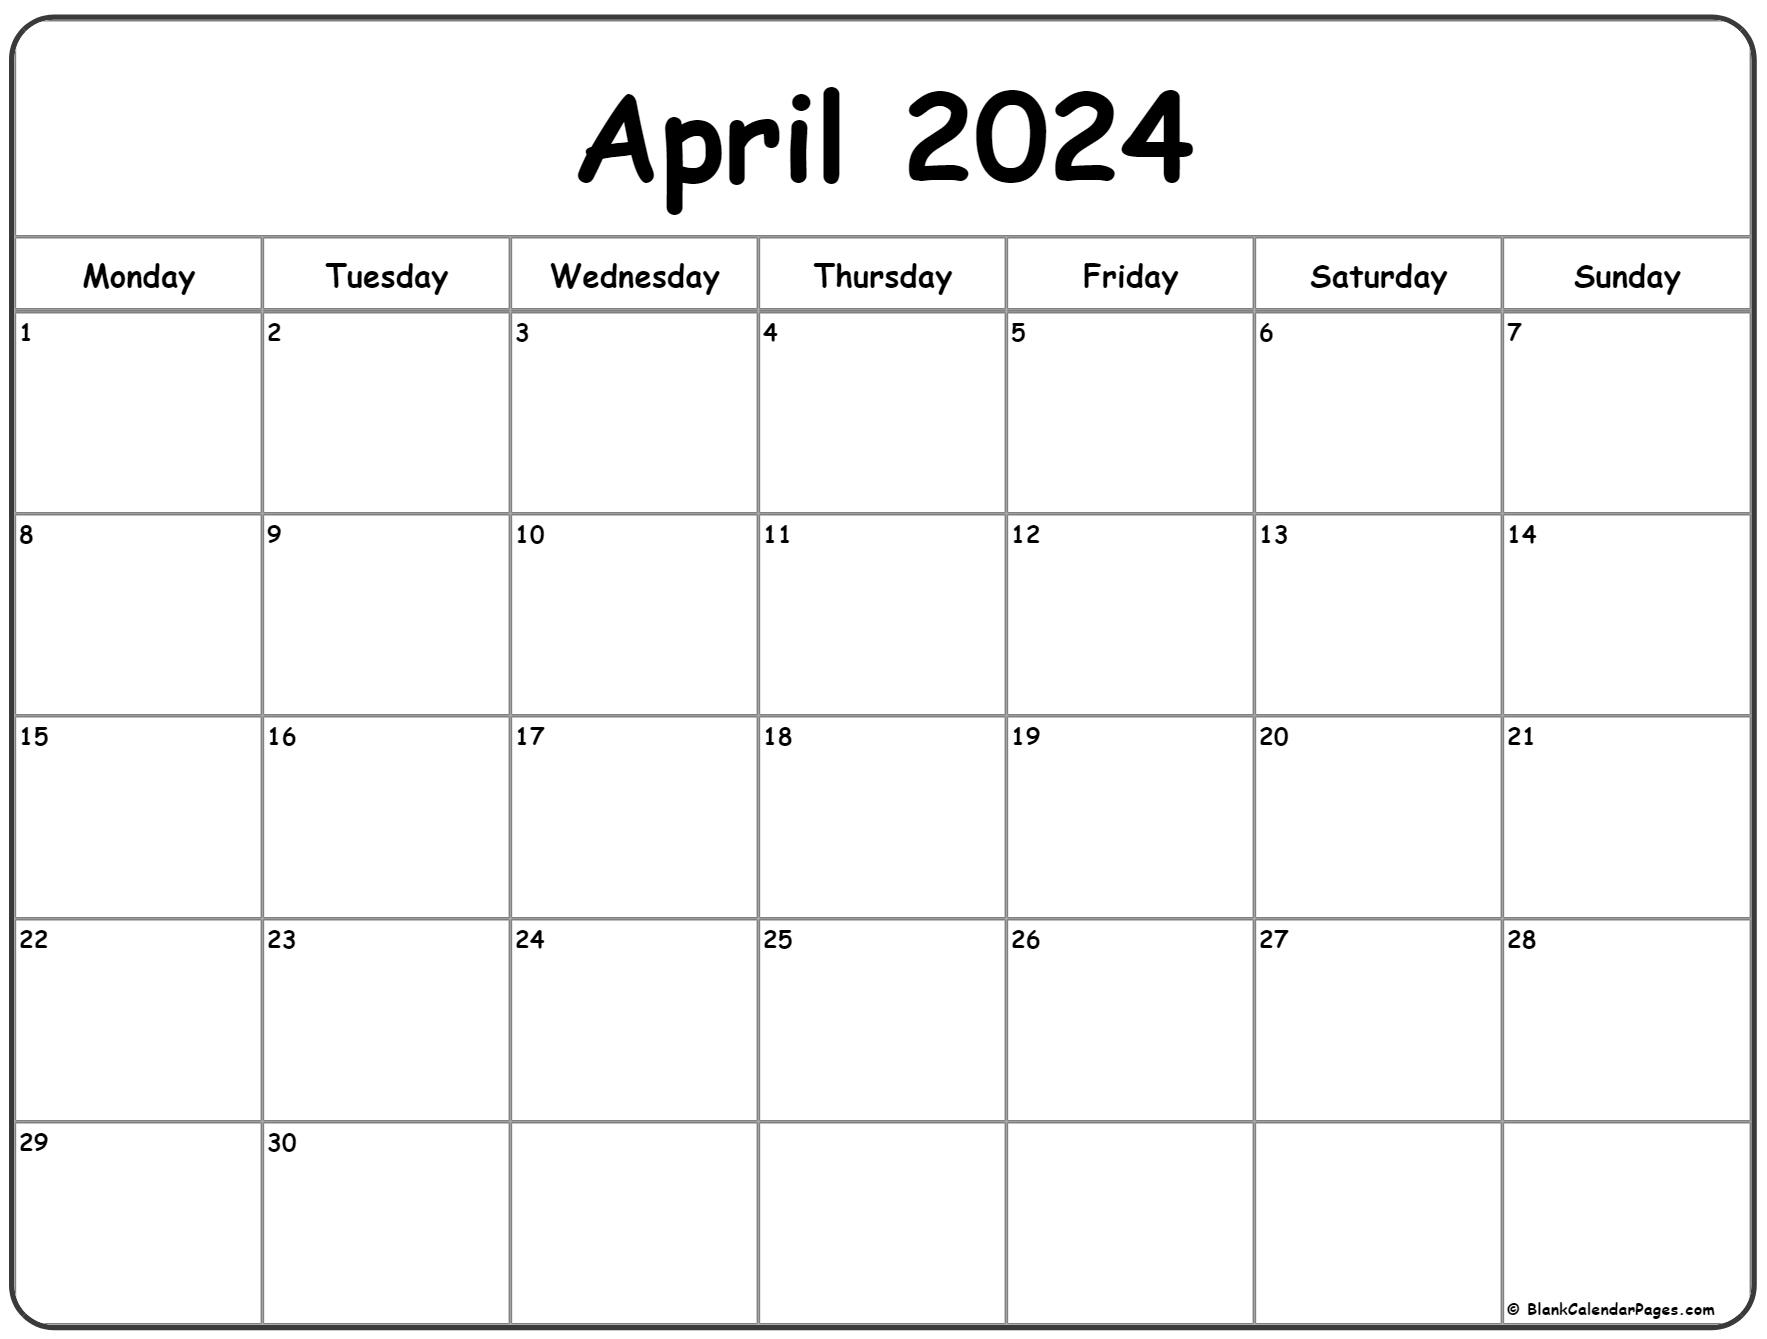 April 2024 Monday Calendar | Monday To Sunday for 2024 Printable April Calendar